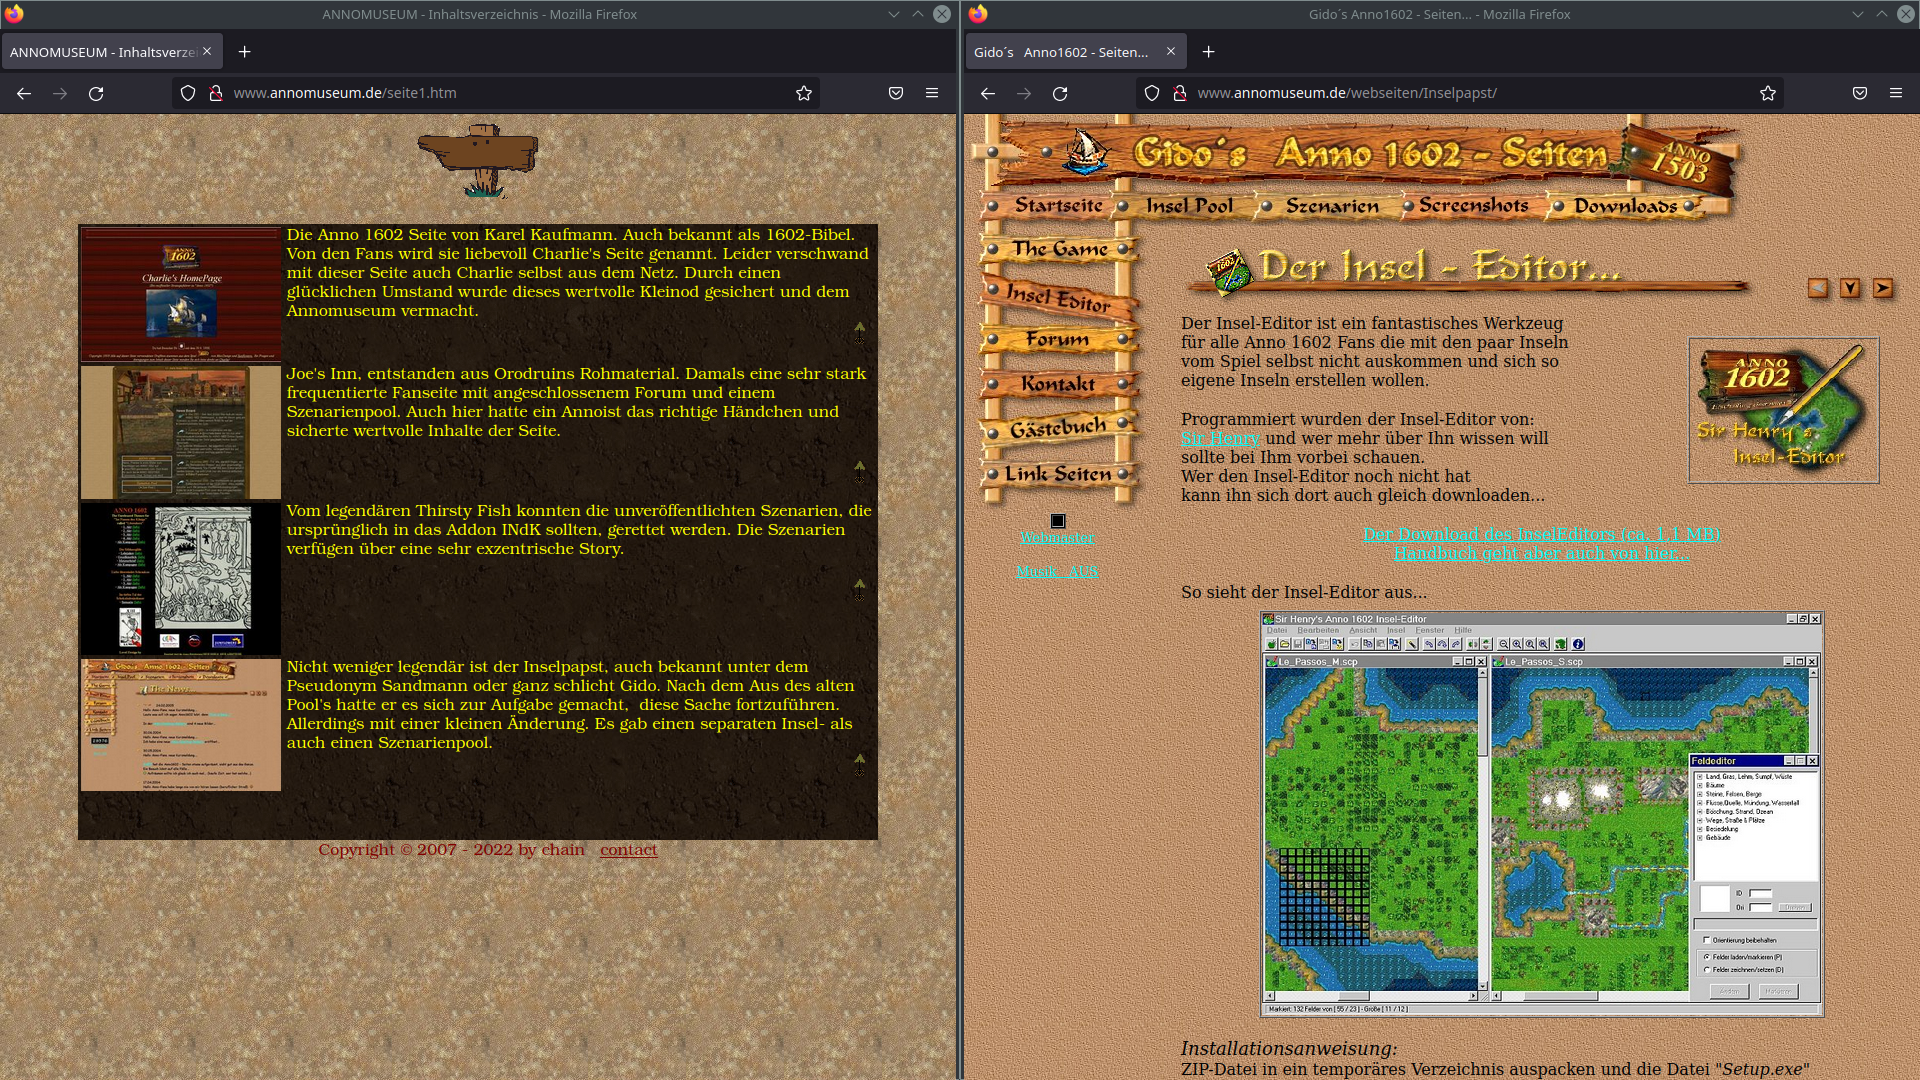 Webseite annomuseum.de im Firefox – Gido´s Anno 1602 - Seiten – Der Insel - Editor…